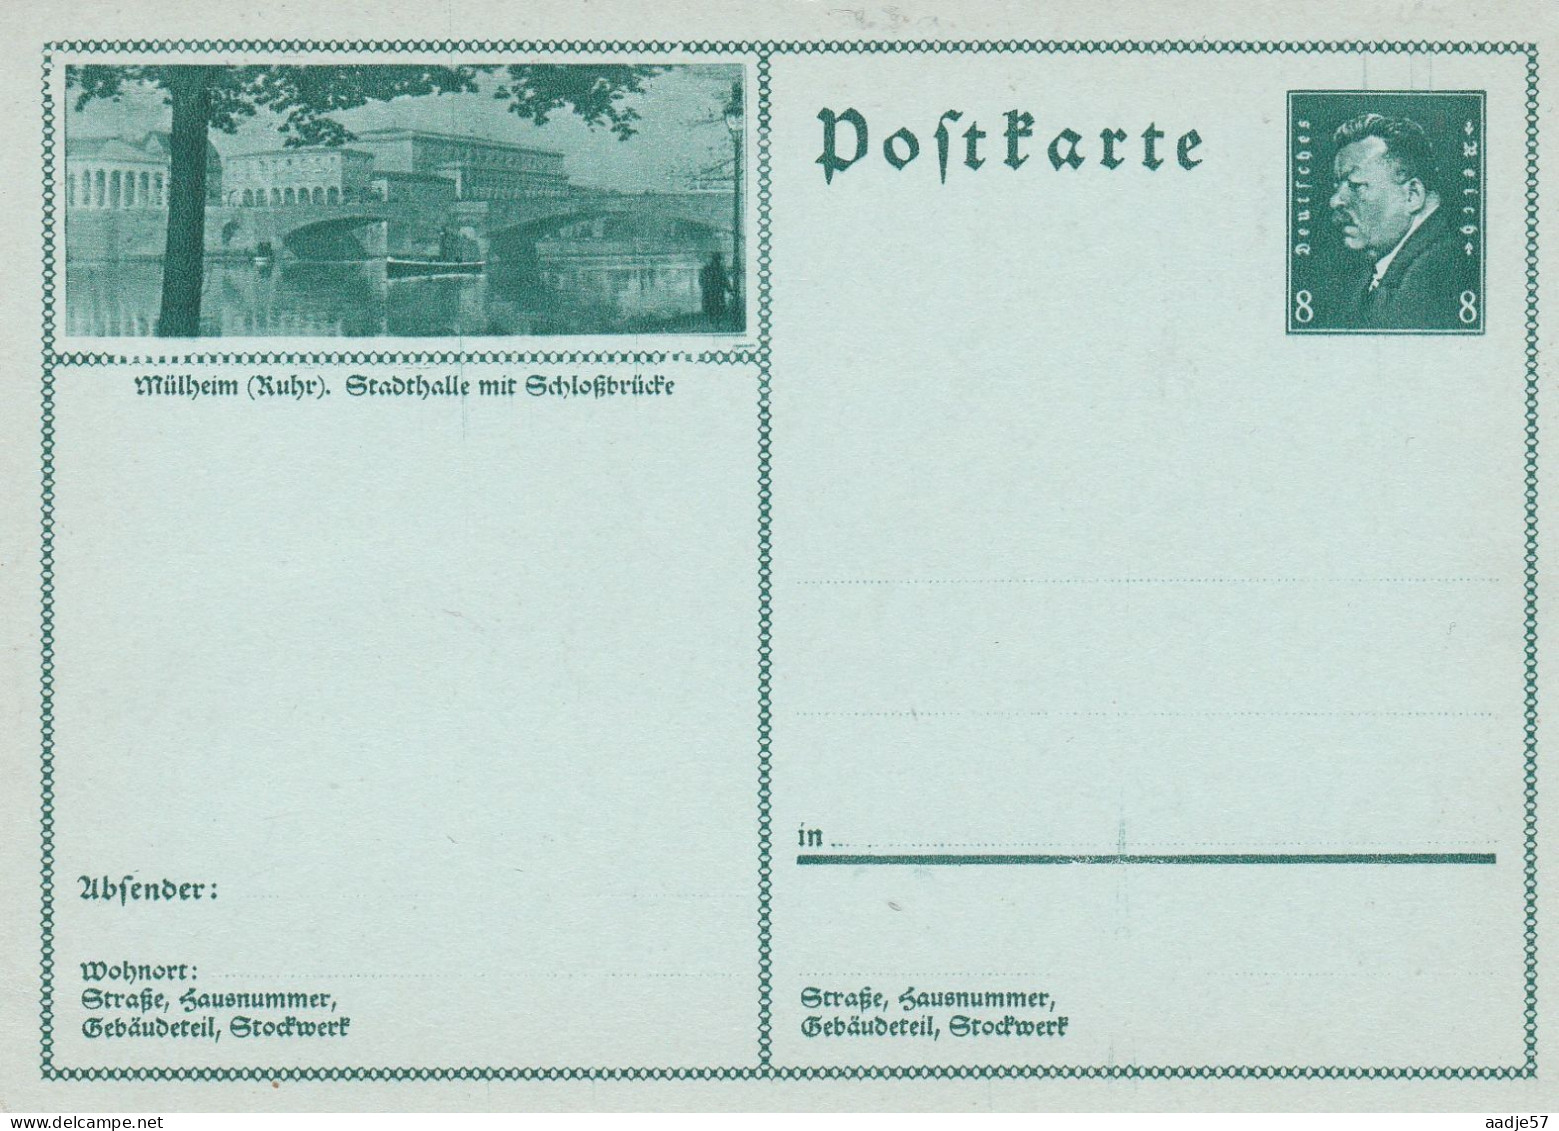 Mühlheim Stadhalle - Bildpostkarte 1930 -  Mint - Postkarten